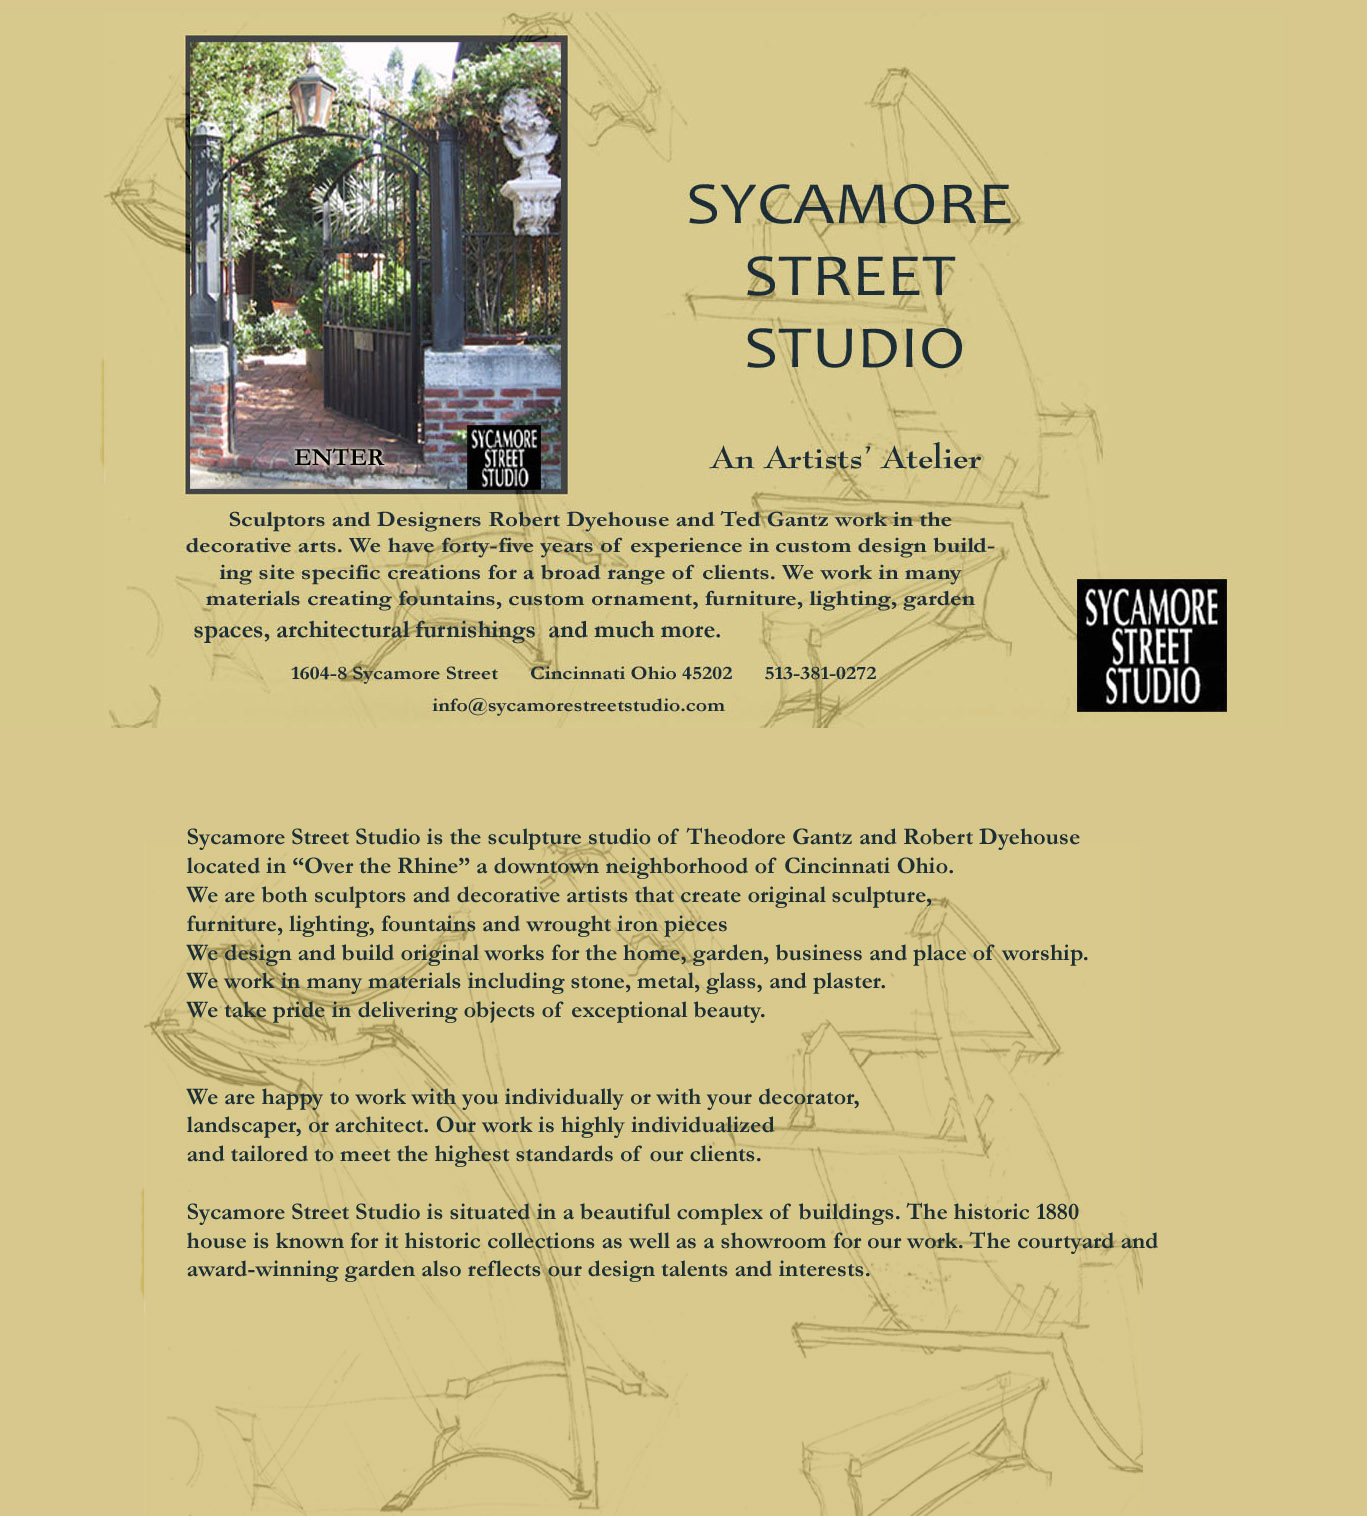 Sycamore Street Studio